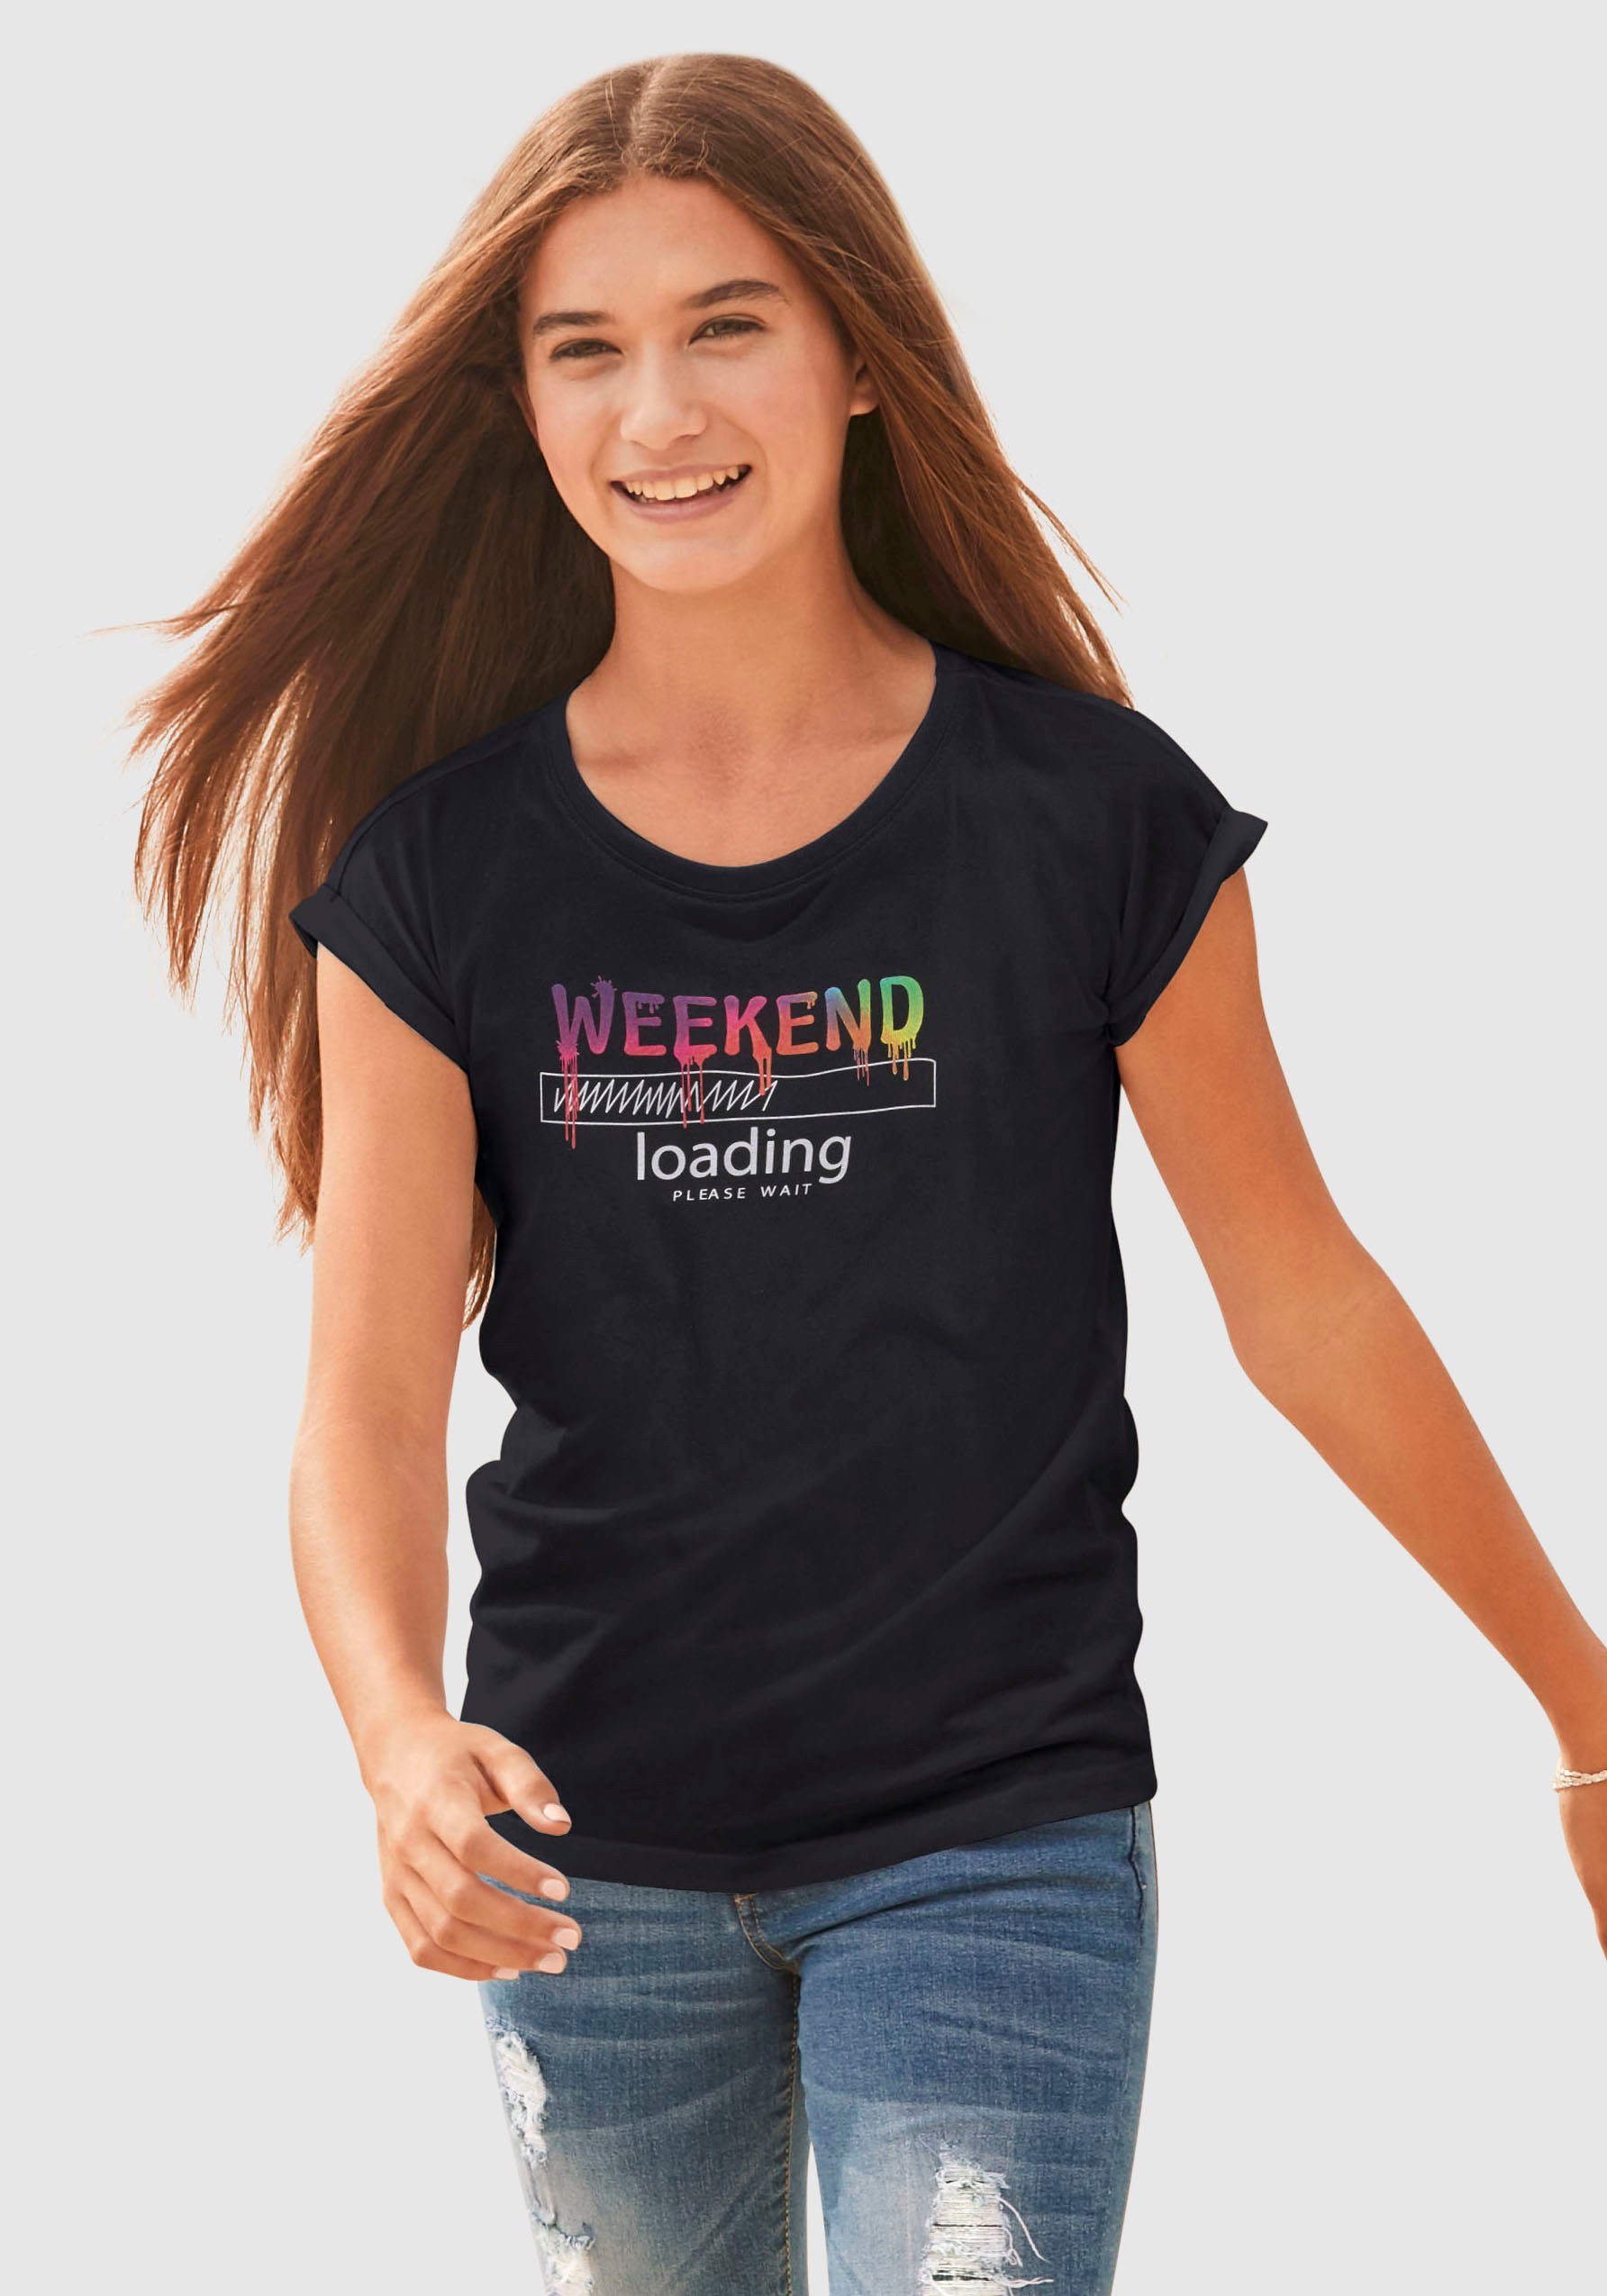 KIDSWORLD T-Shirt WEEKEND loading...please wait in weiter legerer Form, Regenbogen-Druckfarben sind unterschiedlich | T-Shirts